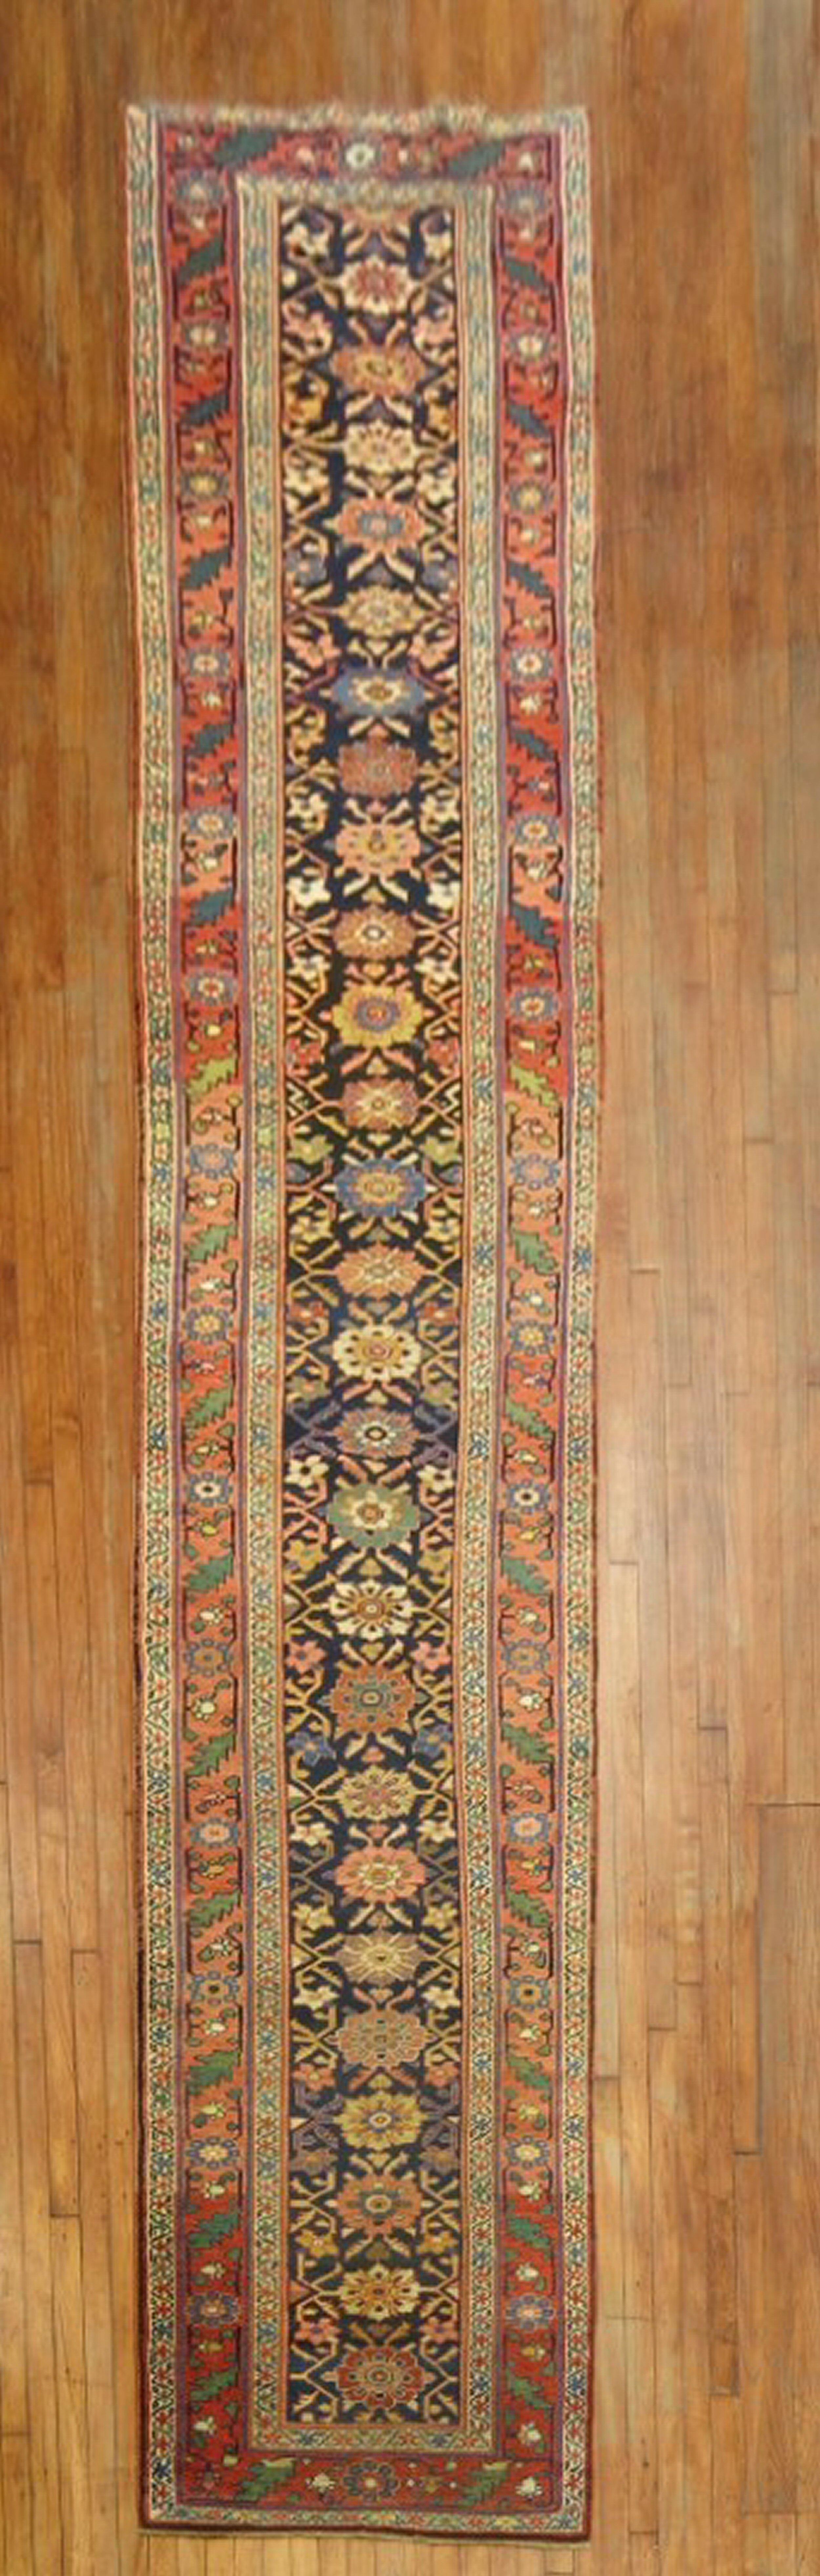 An early 20th century Persian Antique Bidjar Runner.

3' x 17'1''.